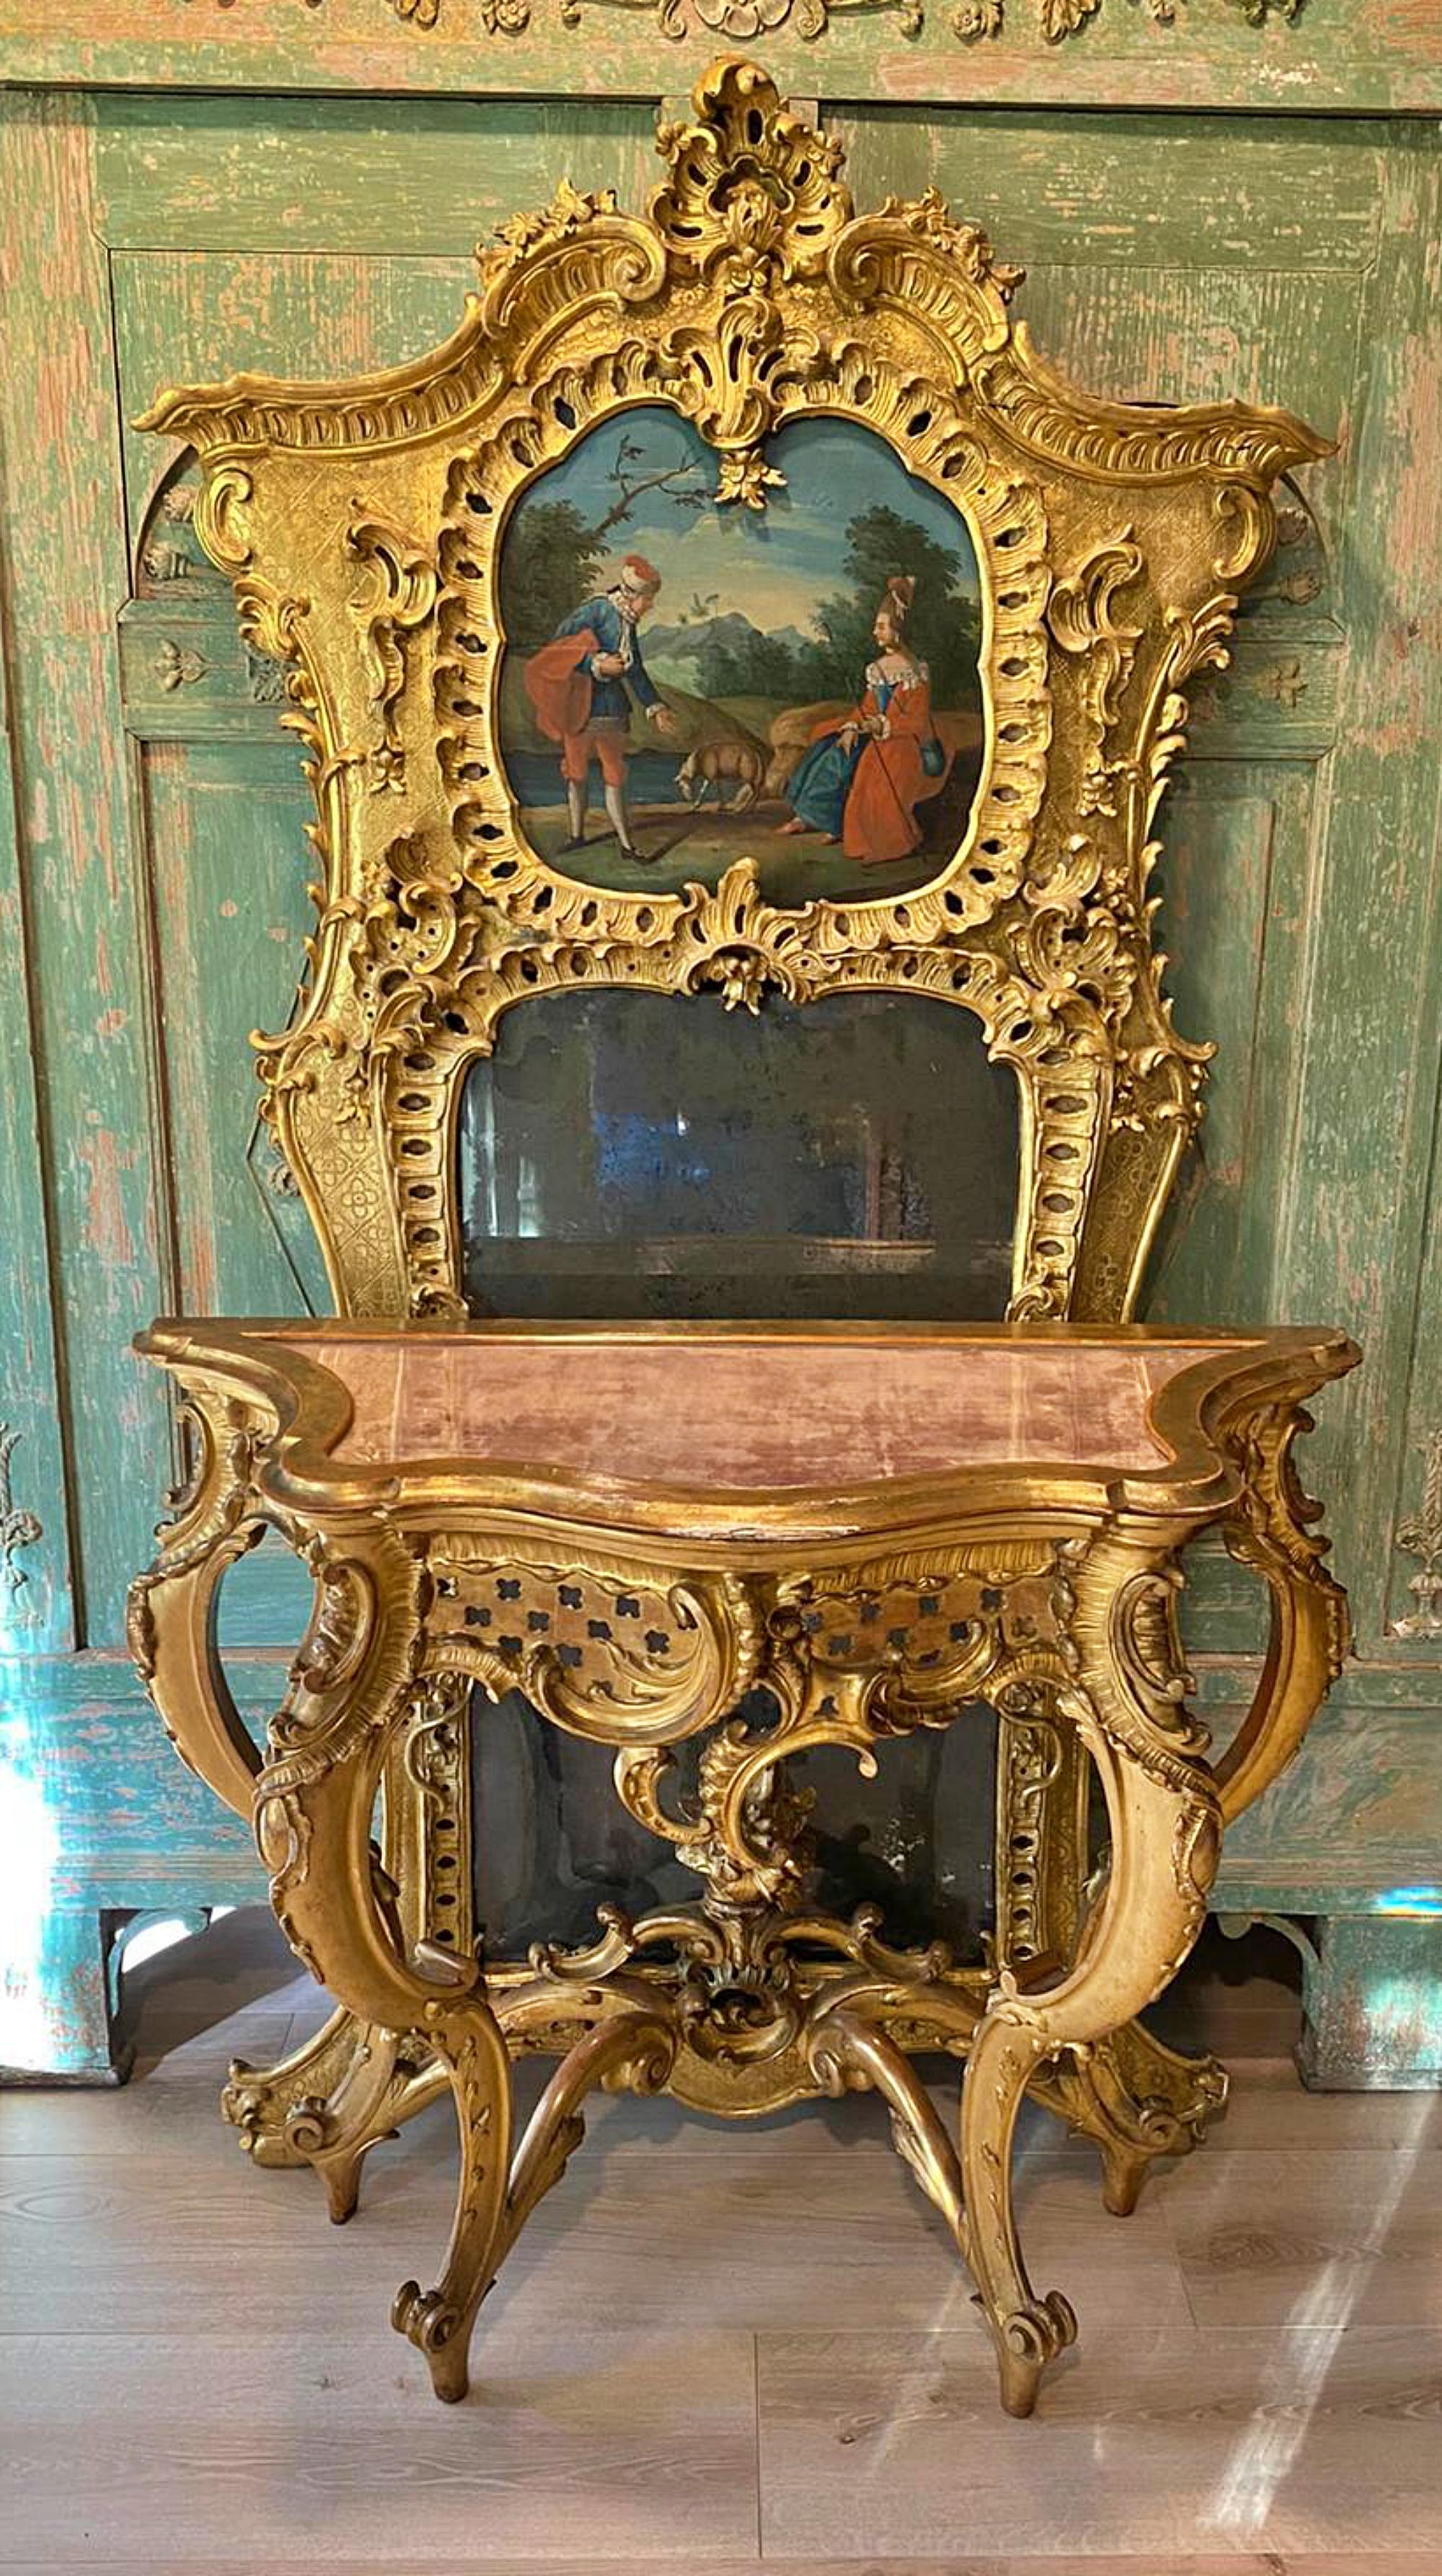 Important miroir et console français de 1760/70 18ème siècle
sculpté dans du bois massif avec un placage en or ancien. 
Dans la partie supérieure, peinture à l'huile peinte à la main avec un paysage typique de l'Epoch, couronnement impressionnant,